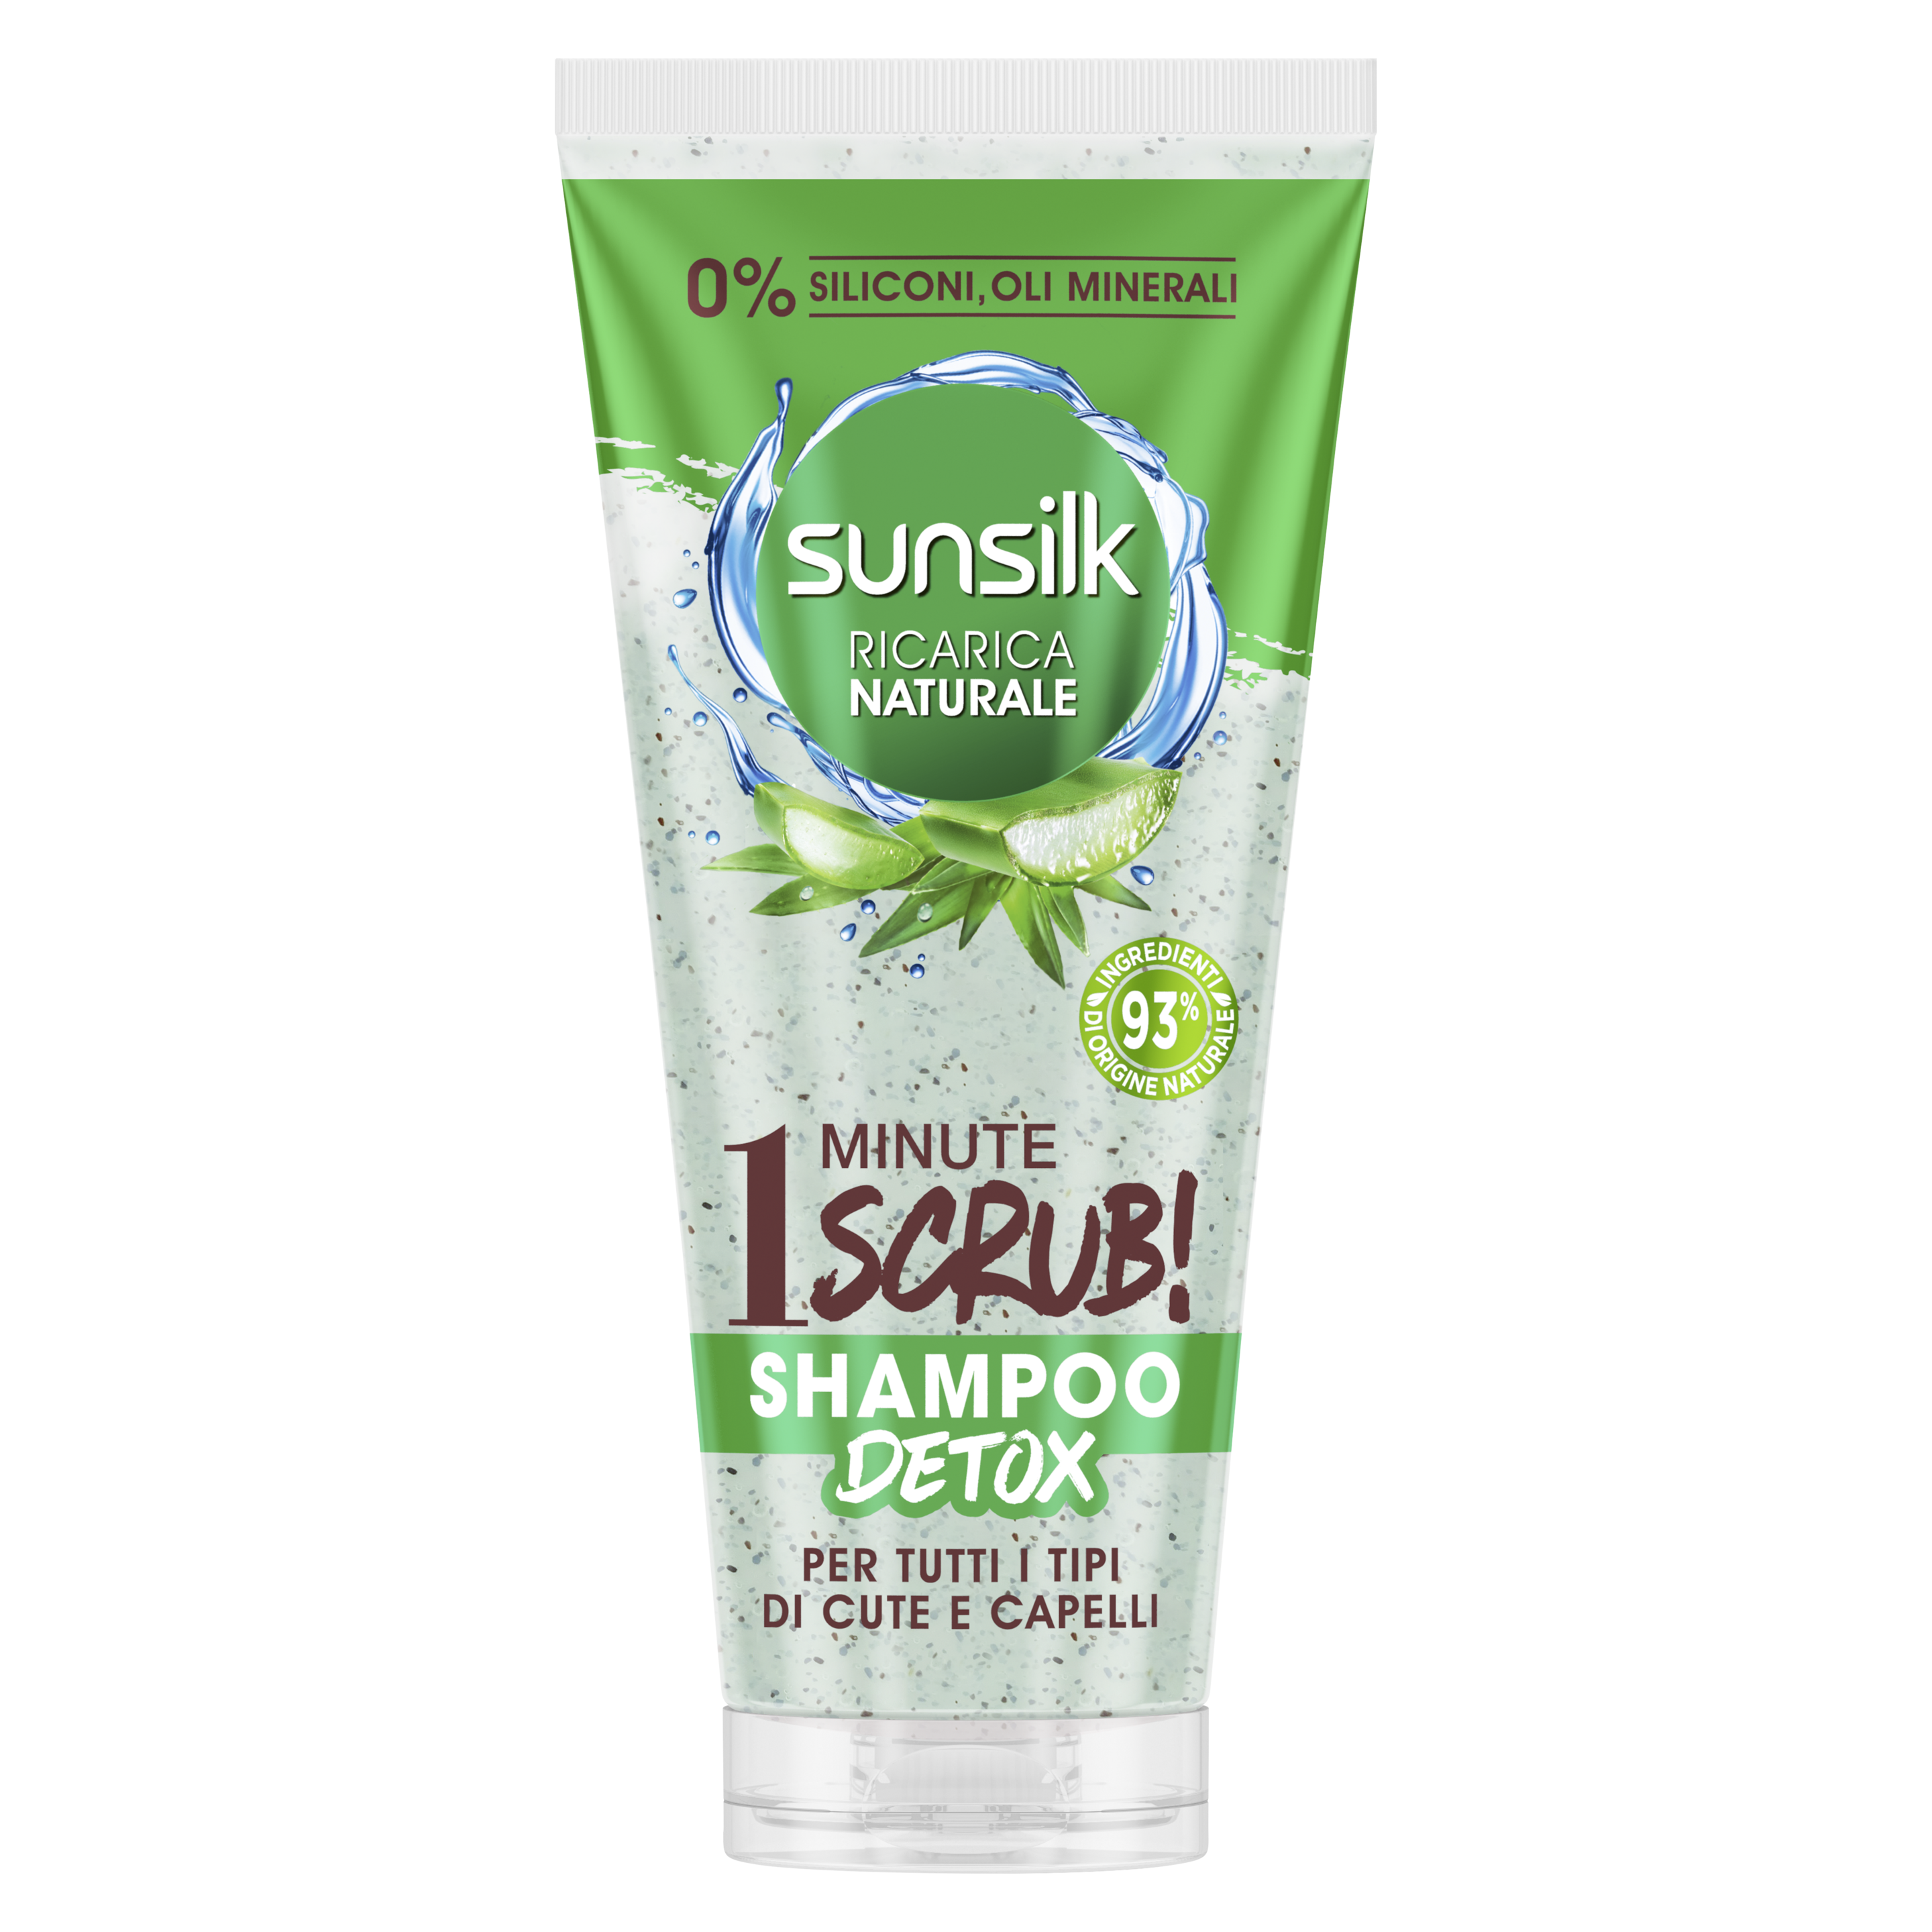 Sunsilk Ricarica Naturale Shampoo Scrub Per tutti i tipi di Cute e Capelli 200 mL